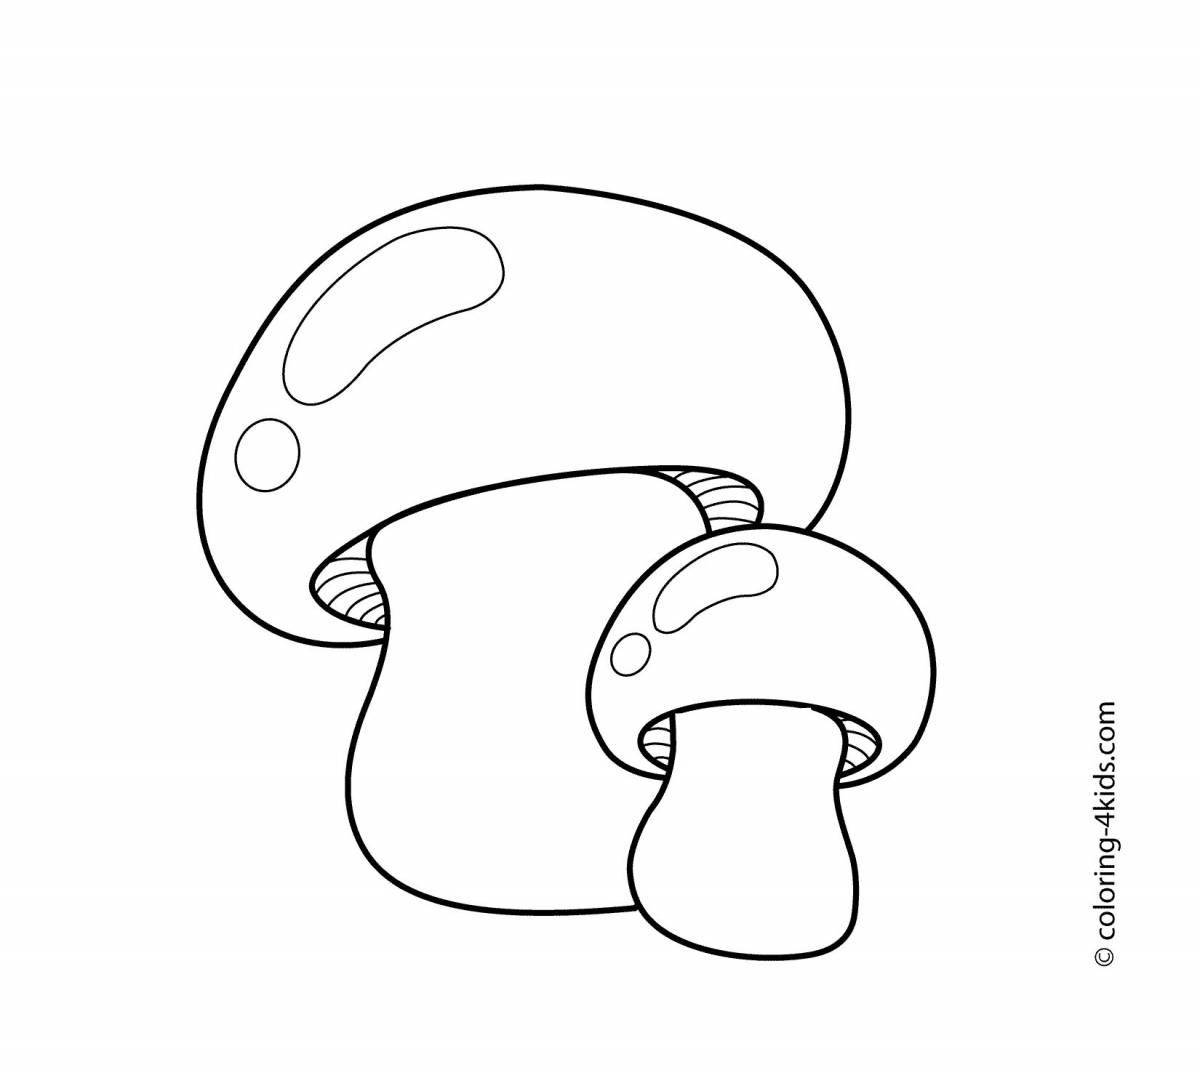 Раскраска игристых грибов